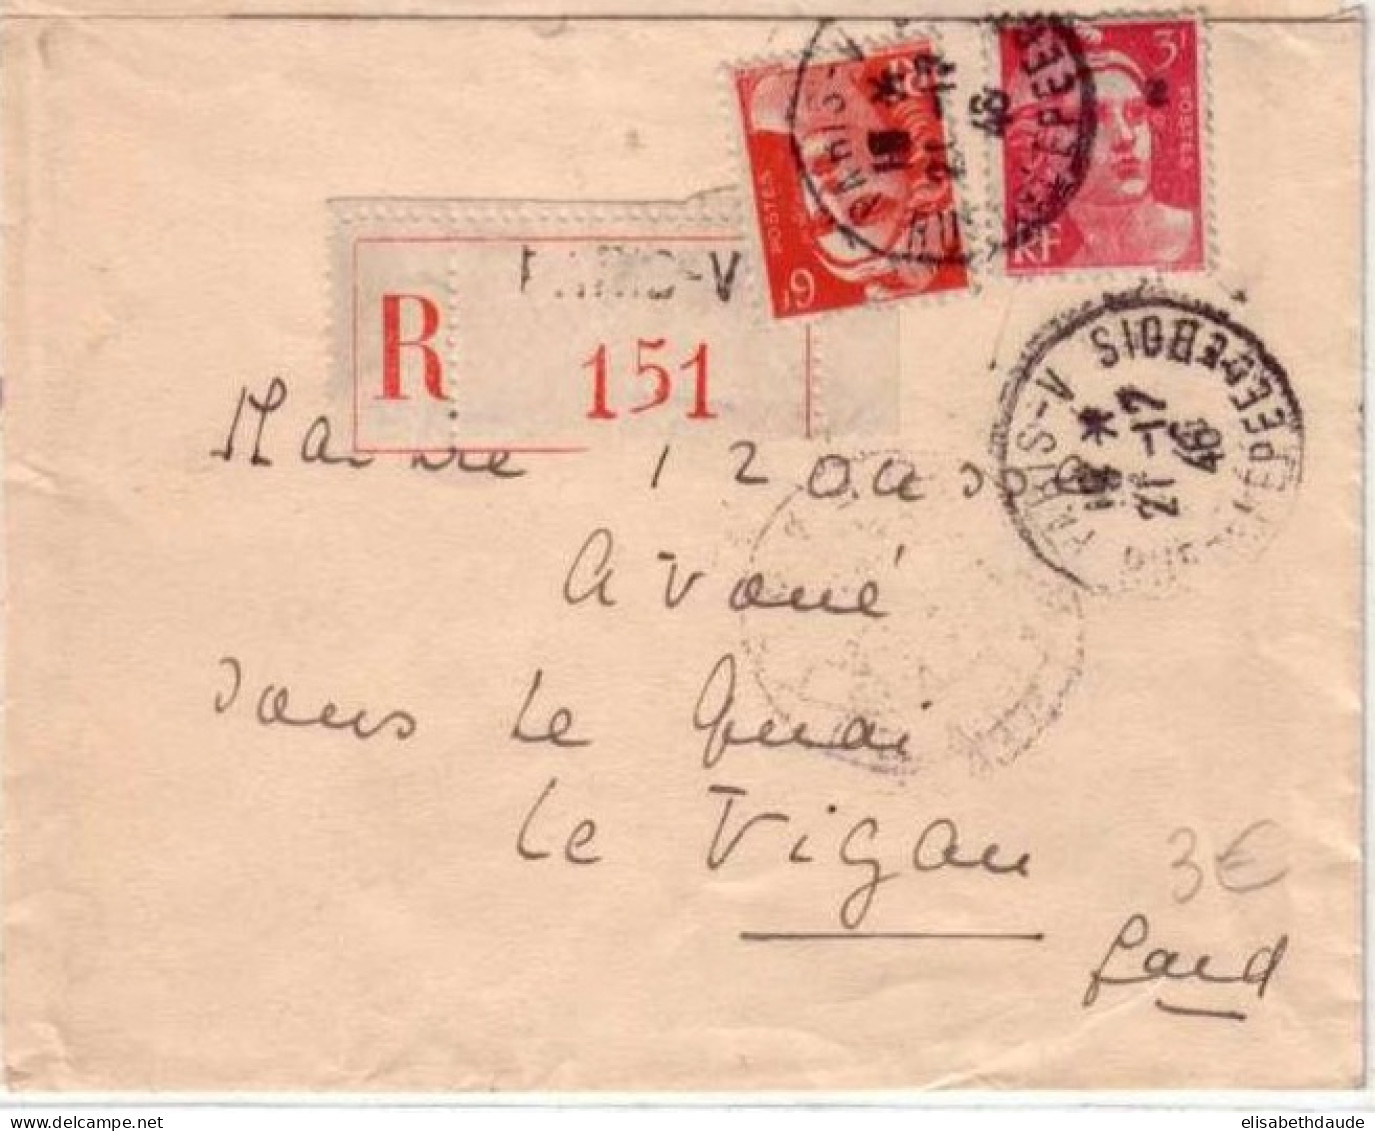 GANDON -Yvert N° 721+716 Sur LETTRE RECOMMANDEE De PARIS (V) Pour LE VIGAN (GARD) -1946 - 1945-54 Marianne (Gandon)